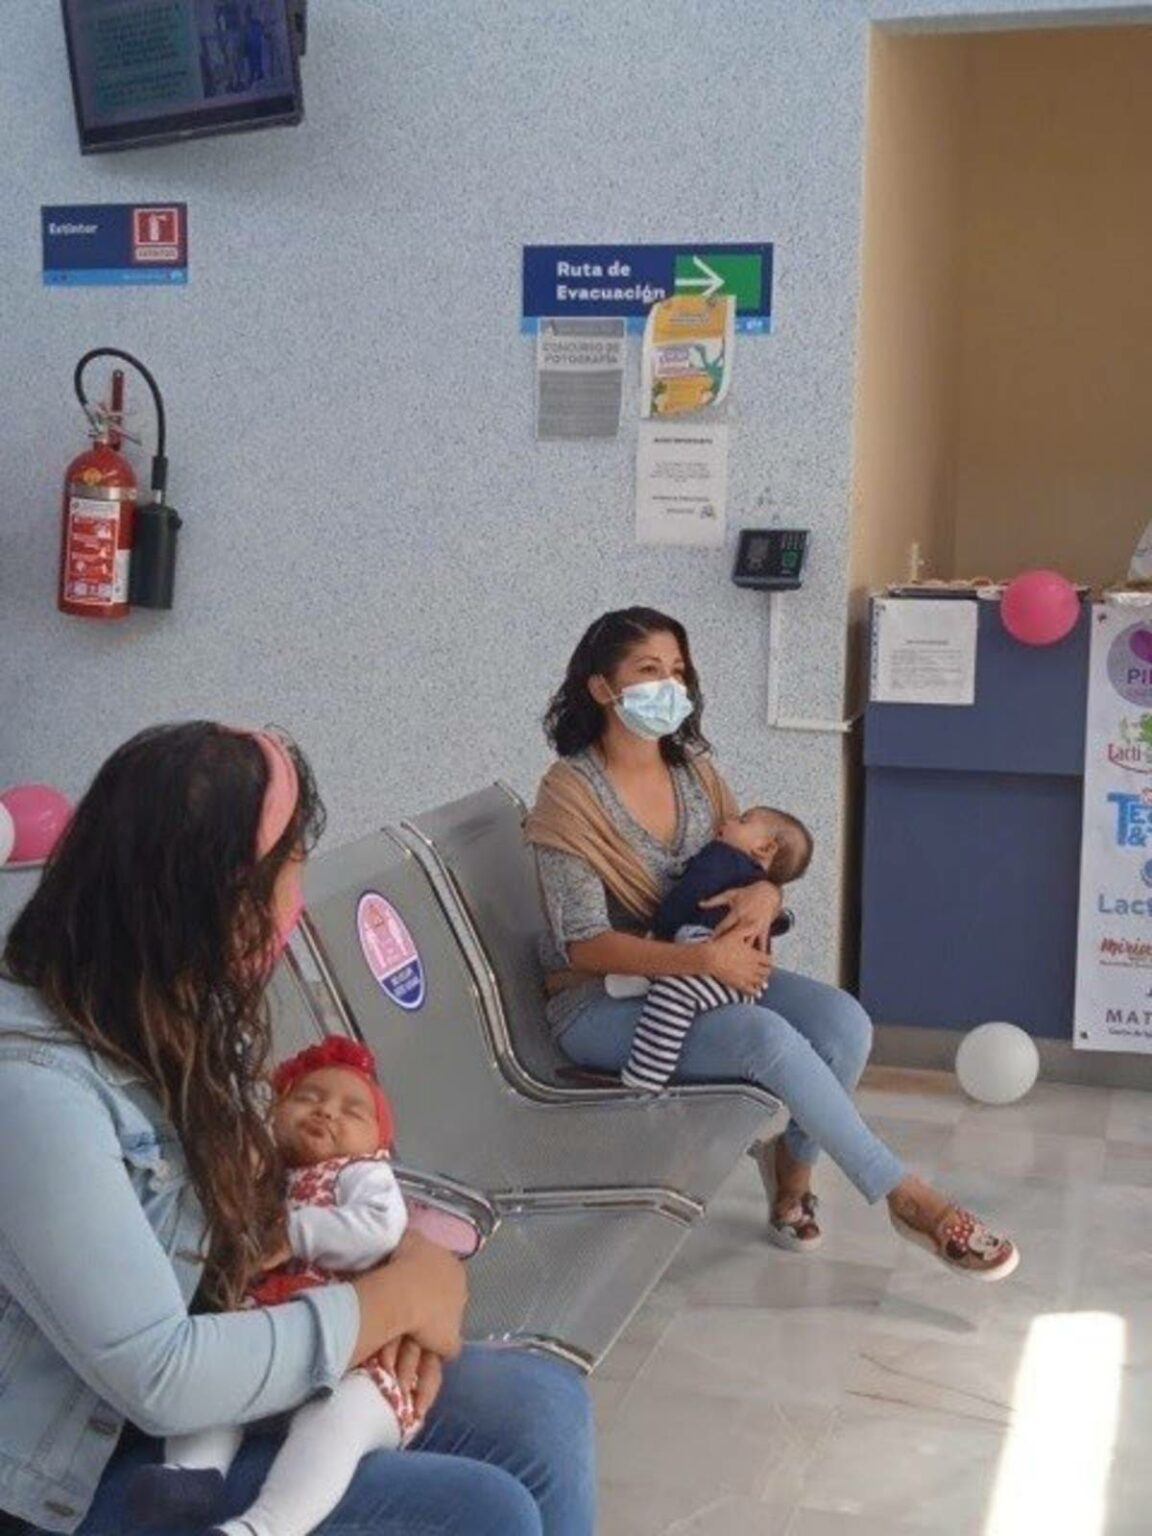 Como parte de las actividades de la Semana Mundial de la Lactancia Materna, el Hospital Comunitario de las Joyas en León, Guanajuato, inauguró su lactario